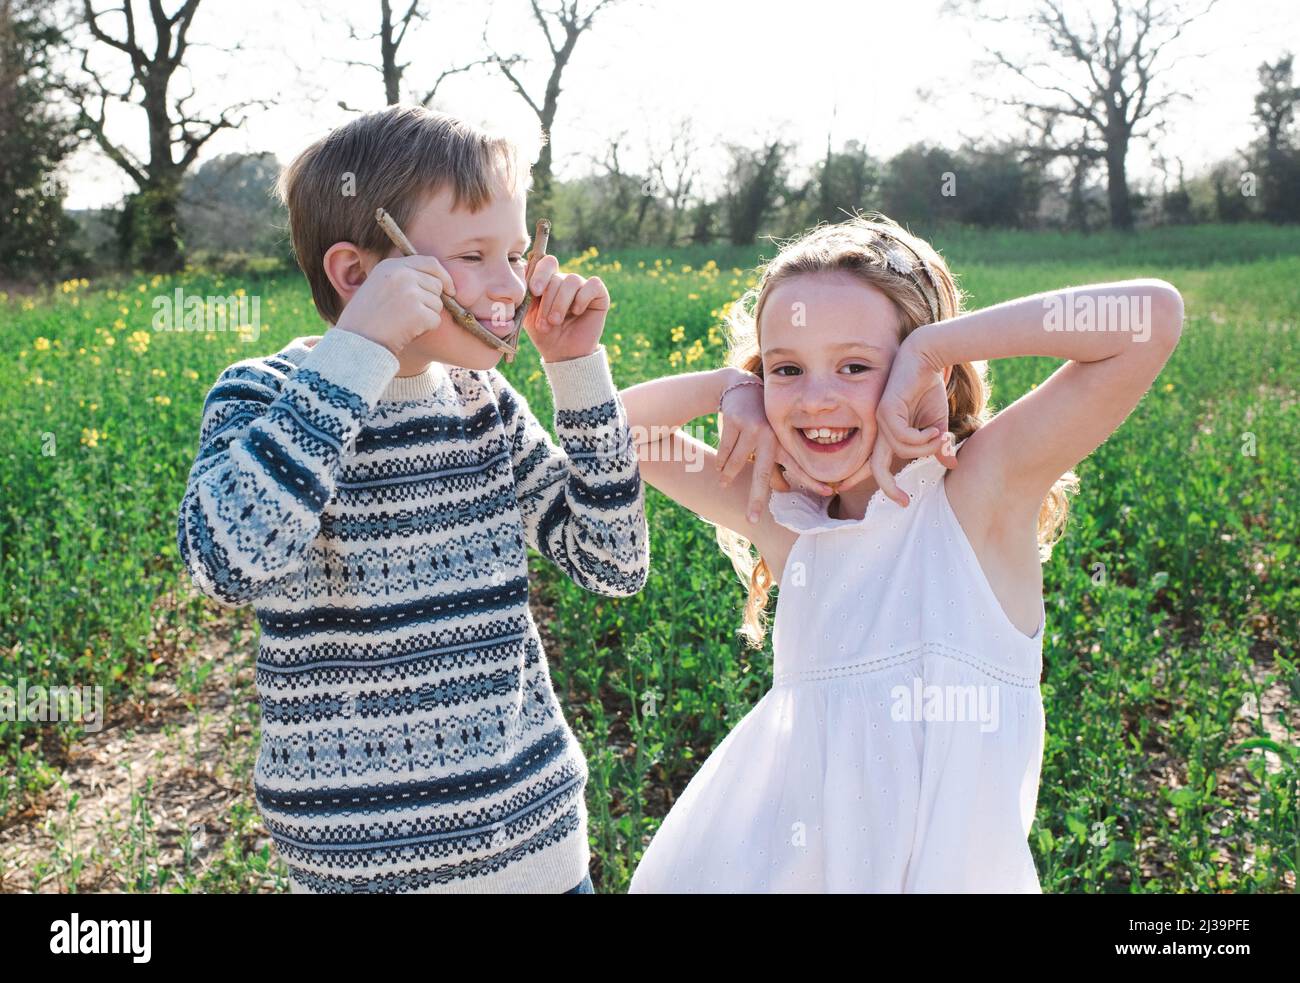 Geschwister ziehen spielerisch Gesichter auf einem Blumenfeld zusammen Stockfoto